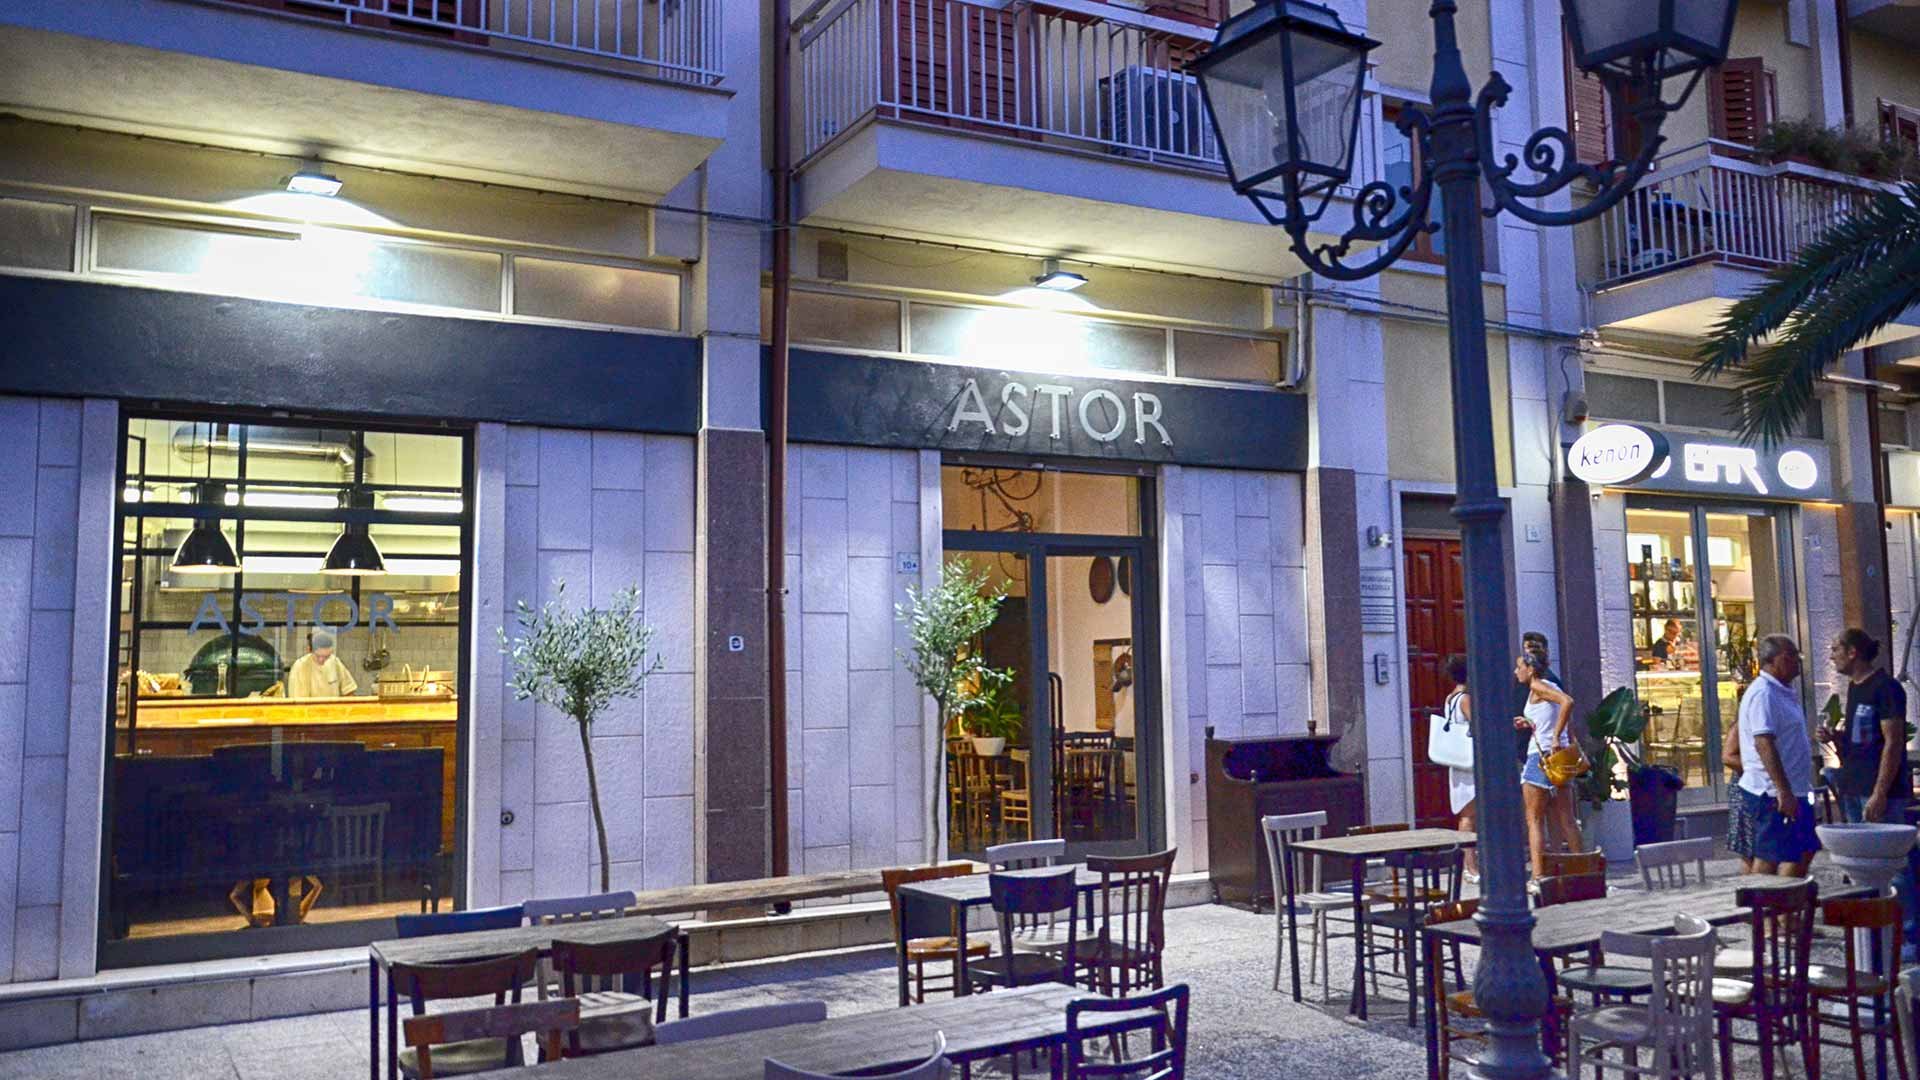 Astor Pane E Cucina, San Ferdinando di Puglia